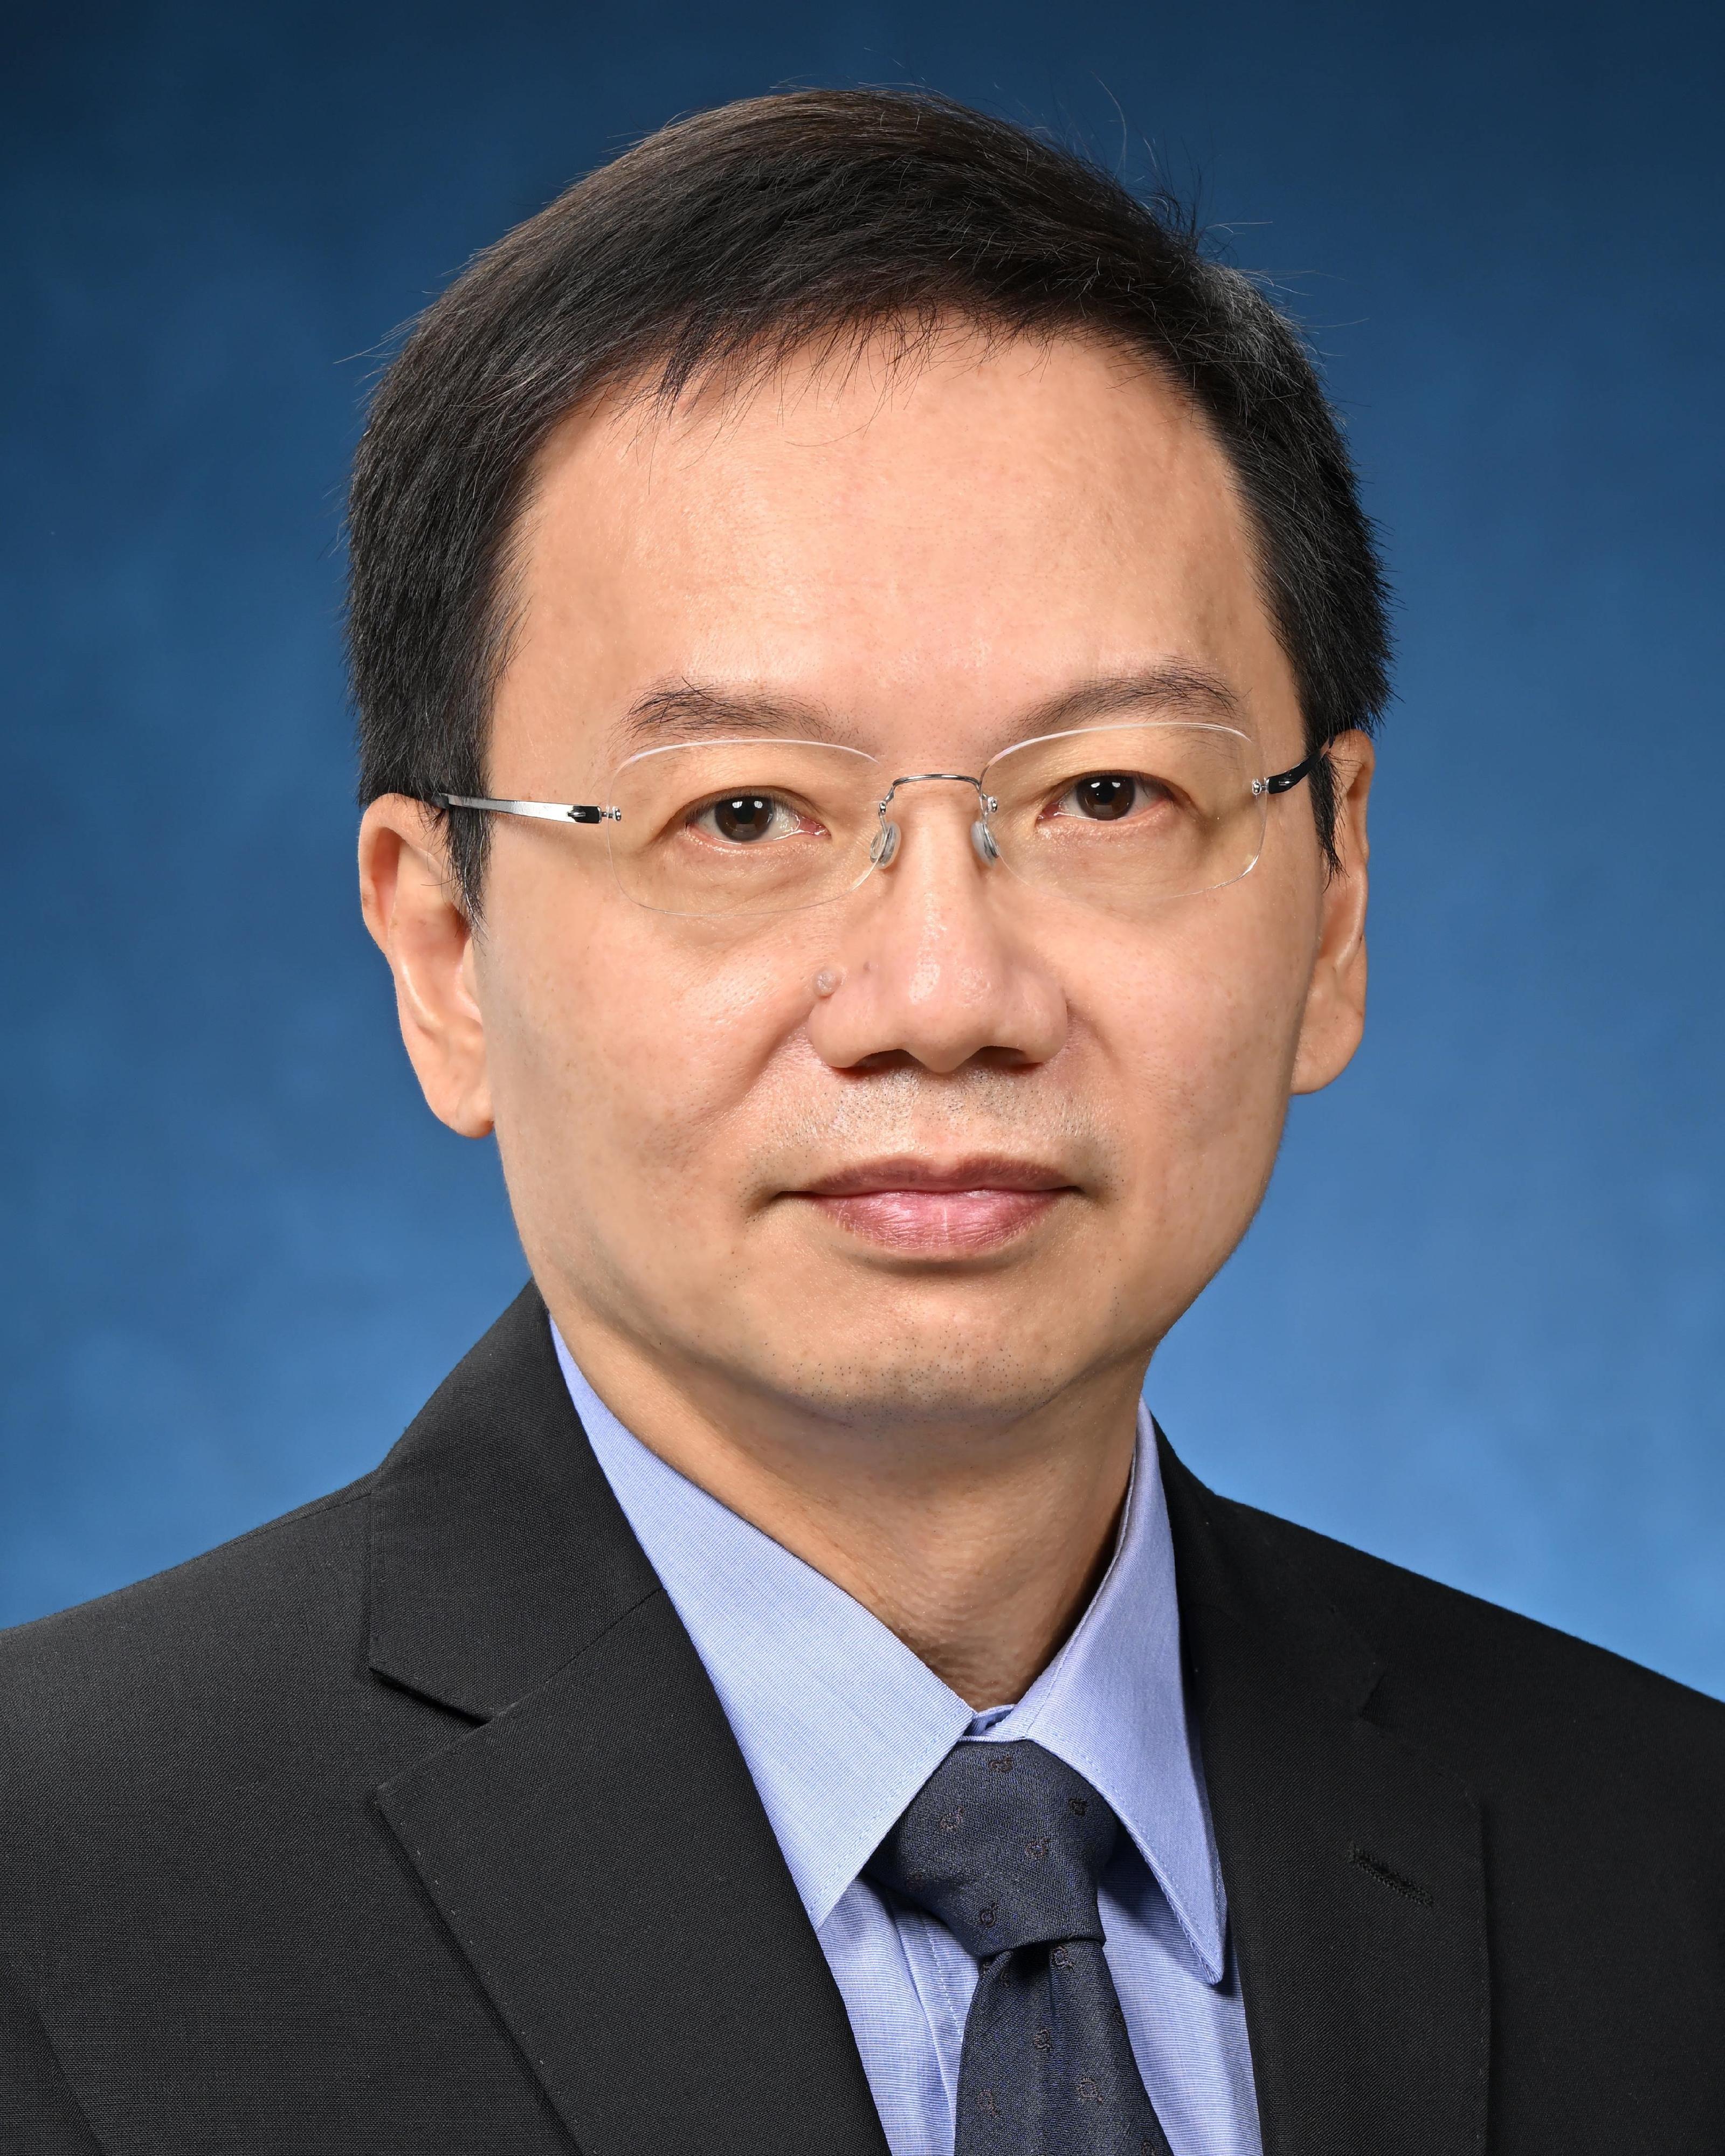 助理政府化验师李伟安博士将于二○二二年五月十六日出任政府化验师。

